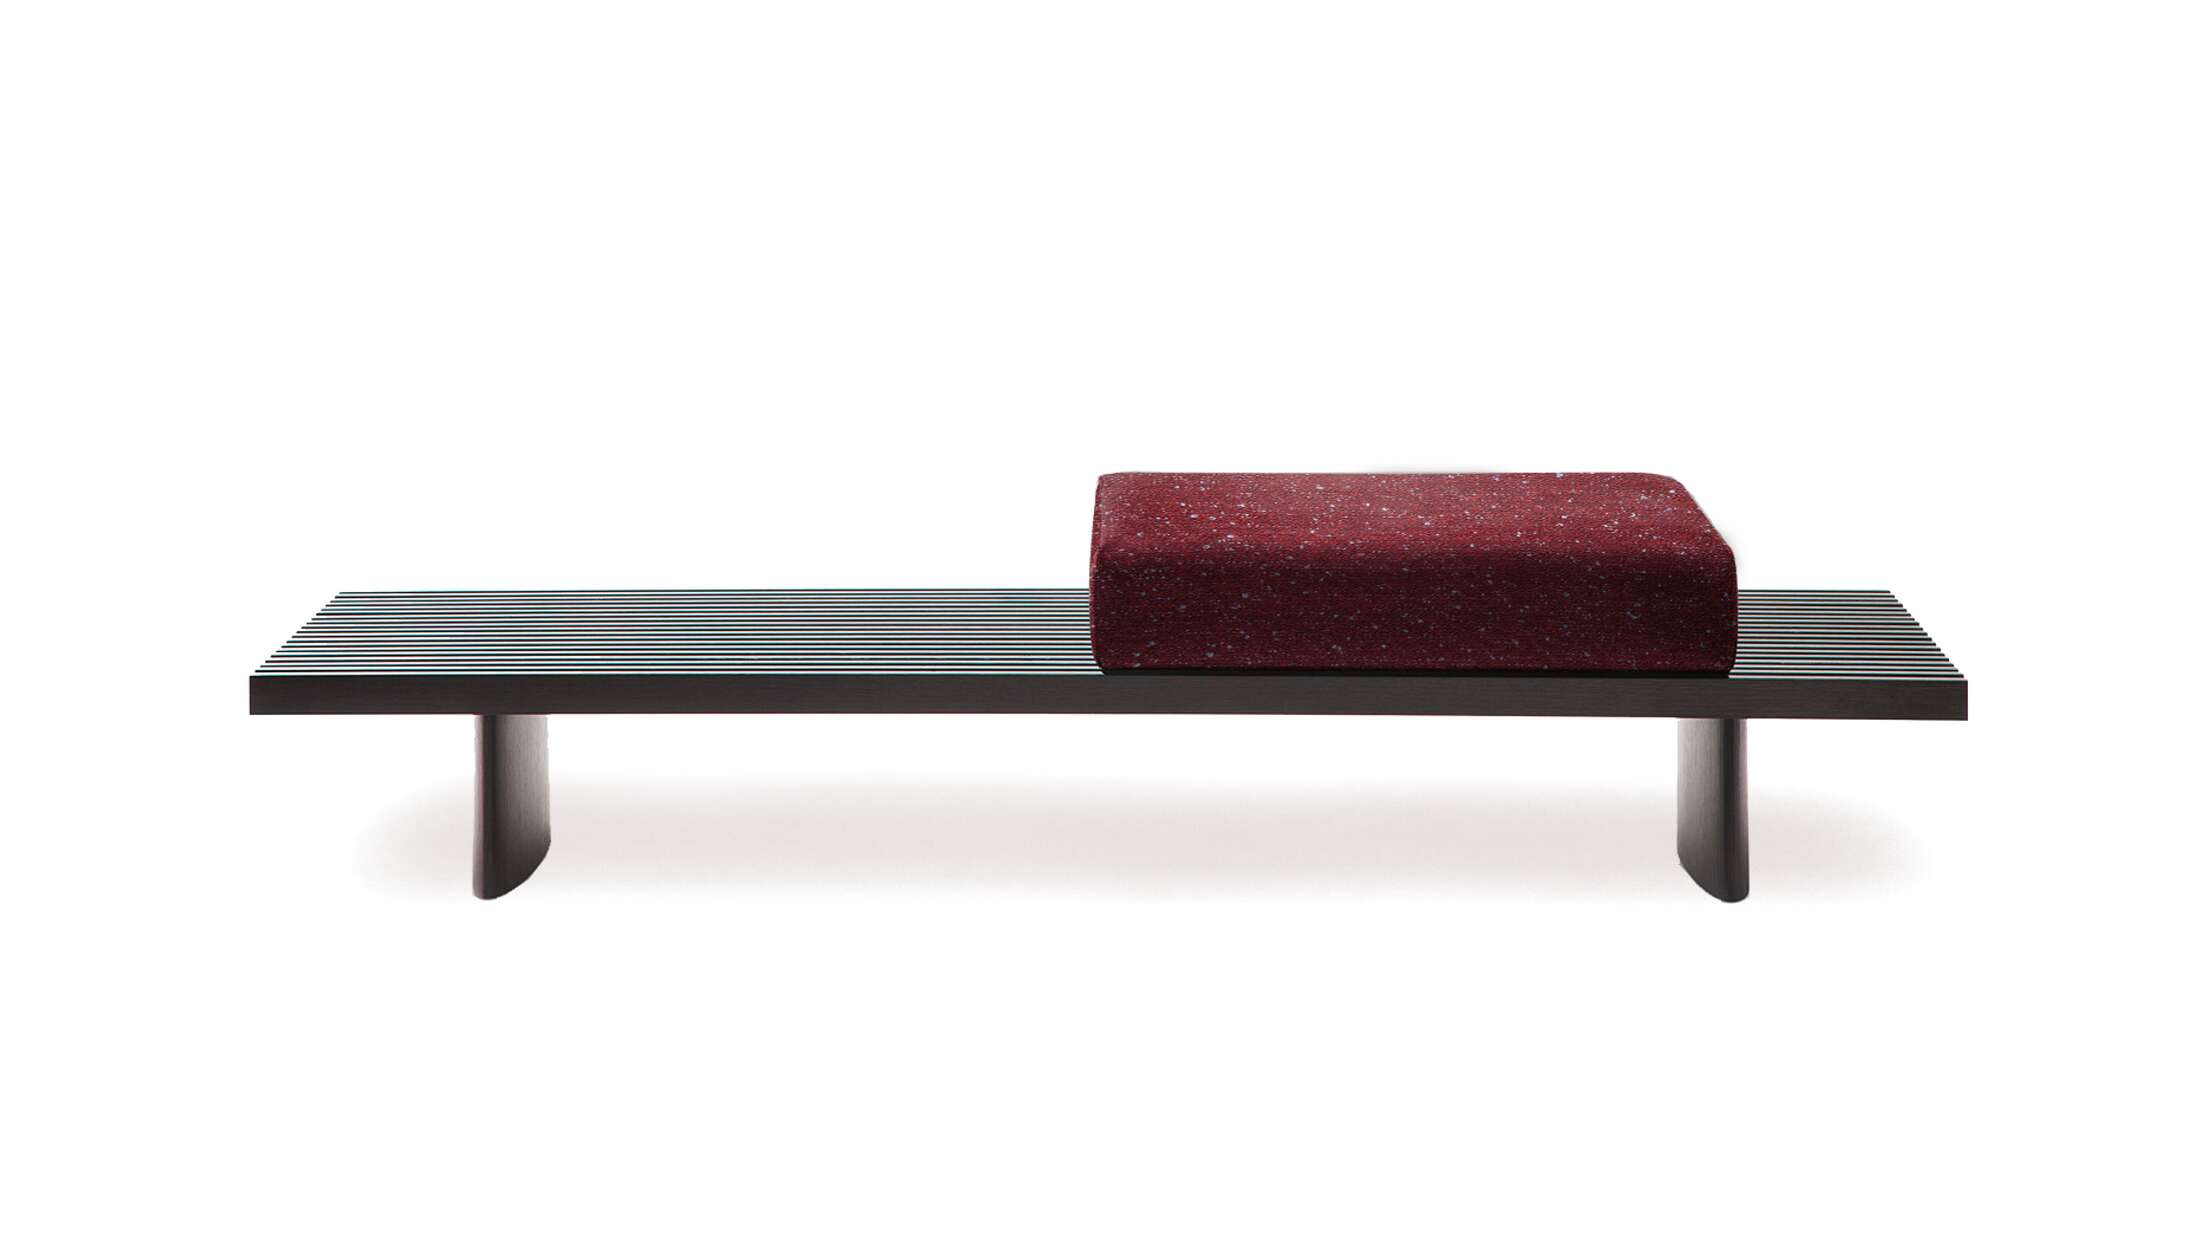 Niedriger Tisch, der auch als Sofa oder Bank verwendet werden kann, entworfen von Charlotte Perriand 1953. Neuauflage durch Cassina im Jahr 2004.  Hergestellt von Cassina in Italien. Der angegebene Preis gilt für das auf dem ersten Bild abgebildete